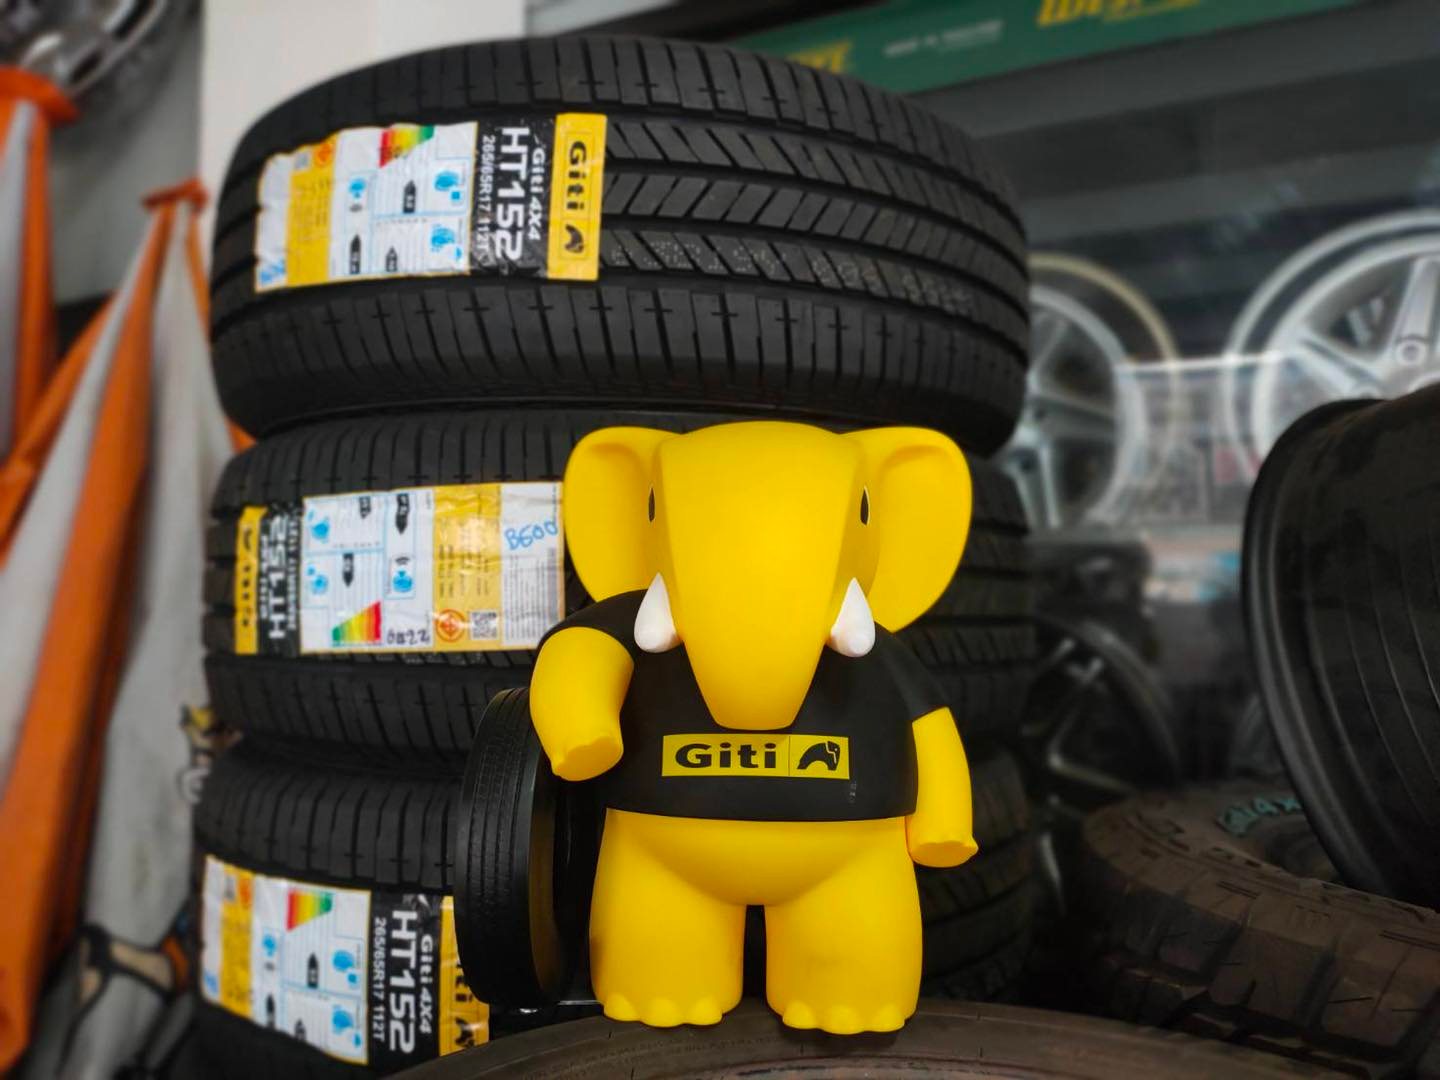 Lốp Giti - Những thông tin về lốp xe ô tô Giti chính hãng từ Singapore 283015350-2234569140046378-1423893165862447139-n